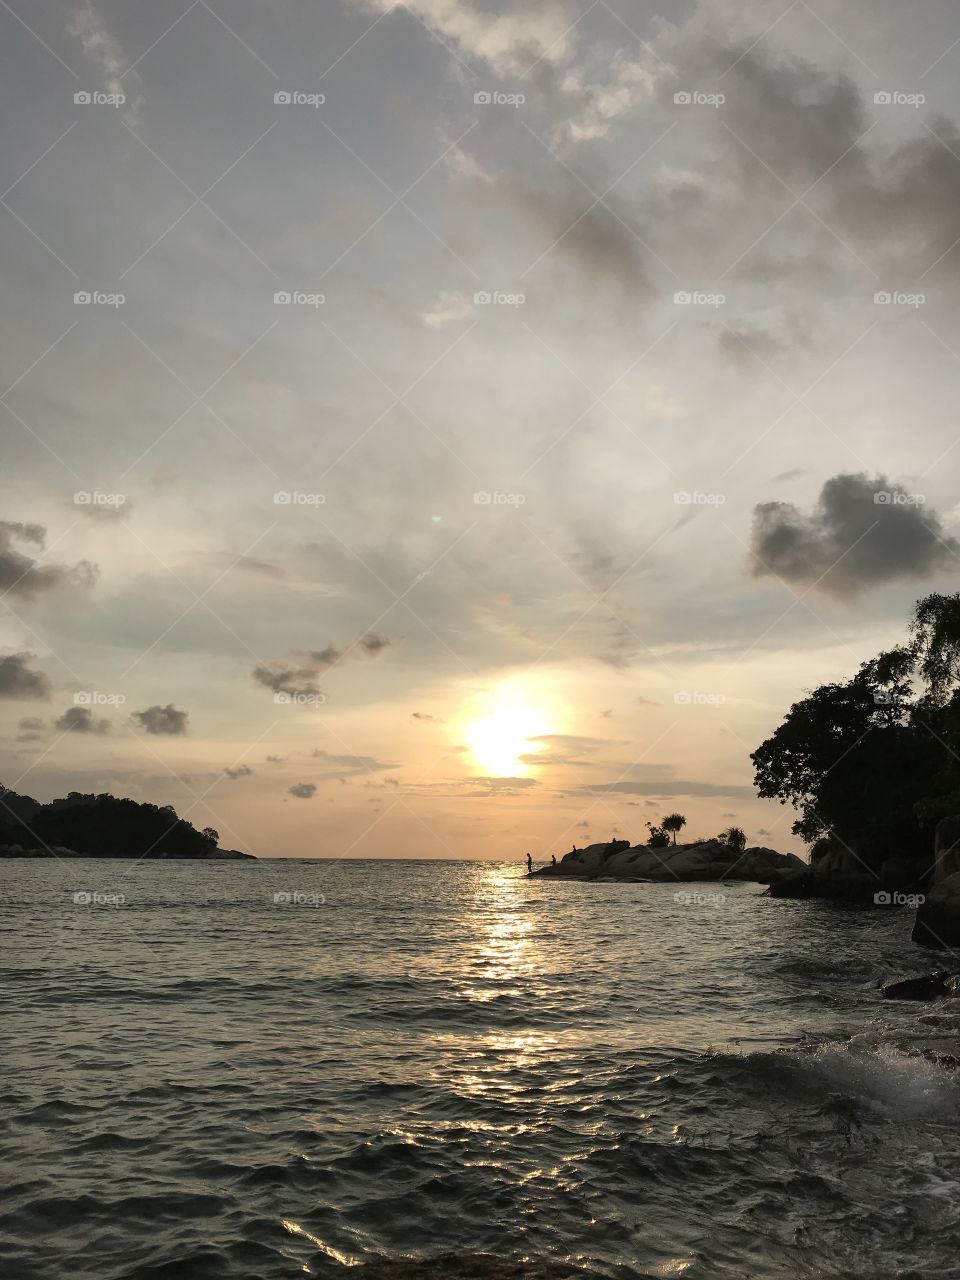 Sunset at Malaysia Pangkor Island